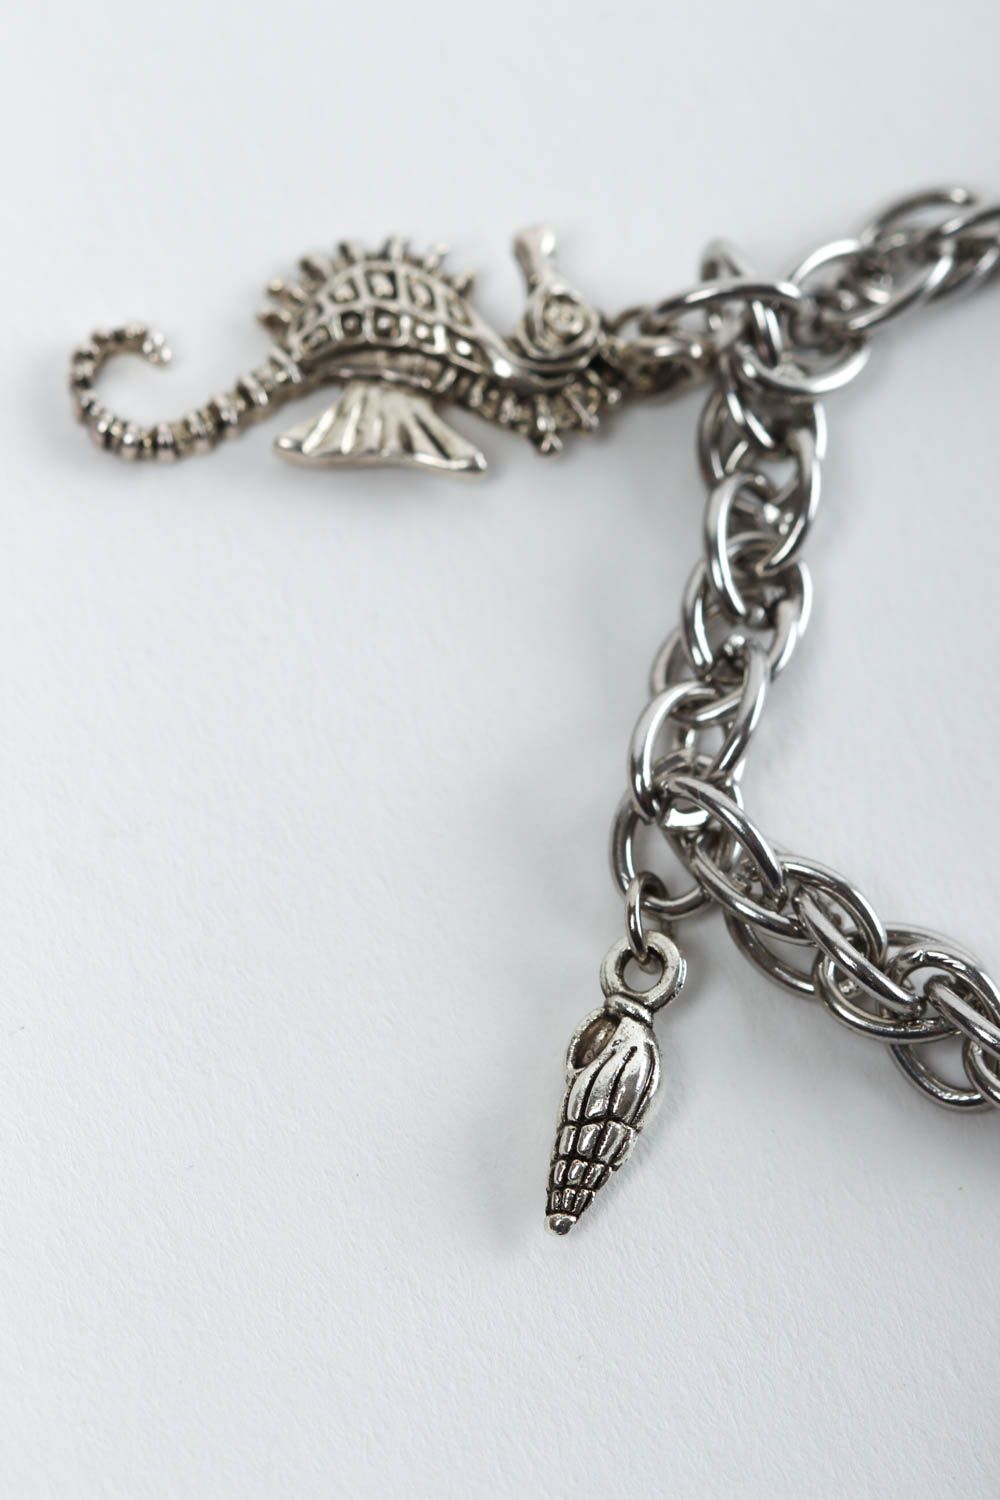 Handmade bracelet designer bracelet with charms unusual gift for women photo 4